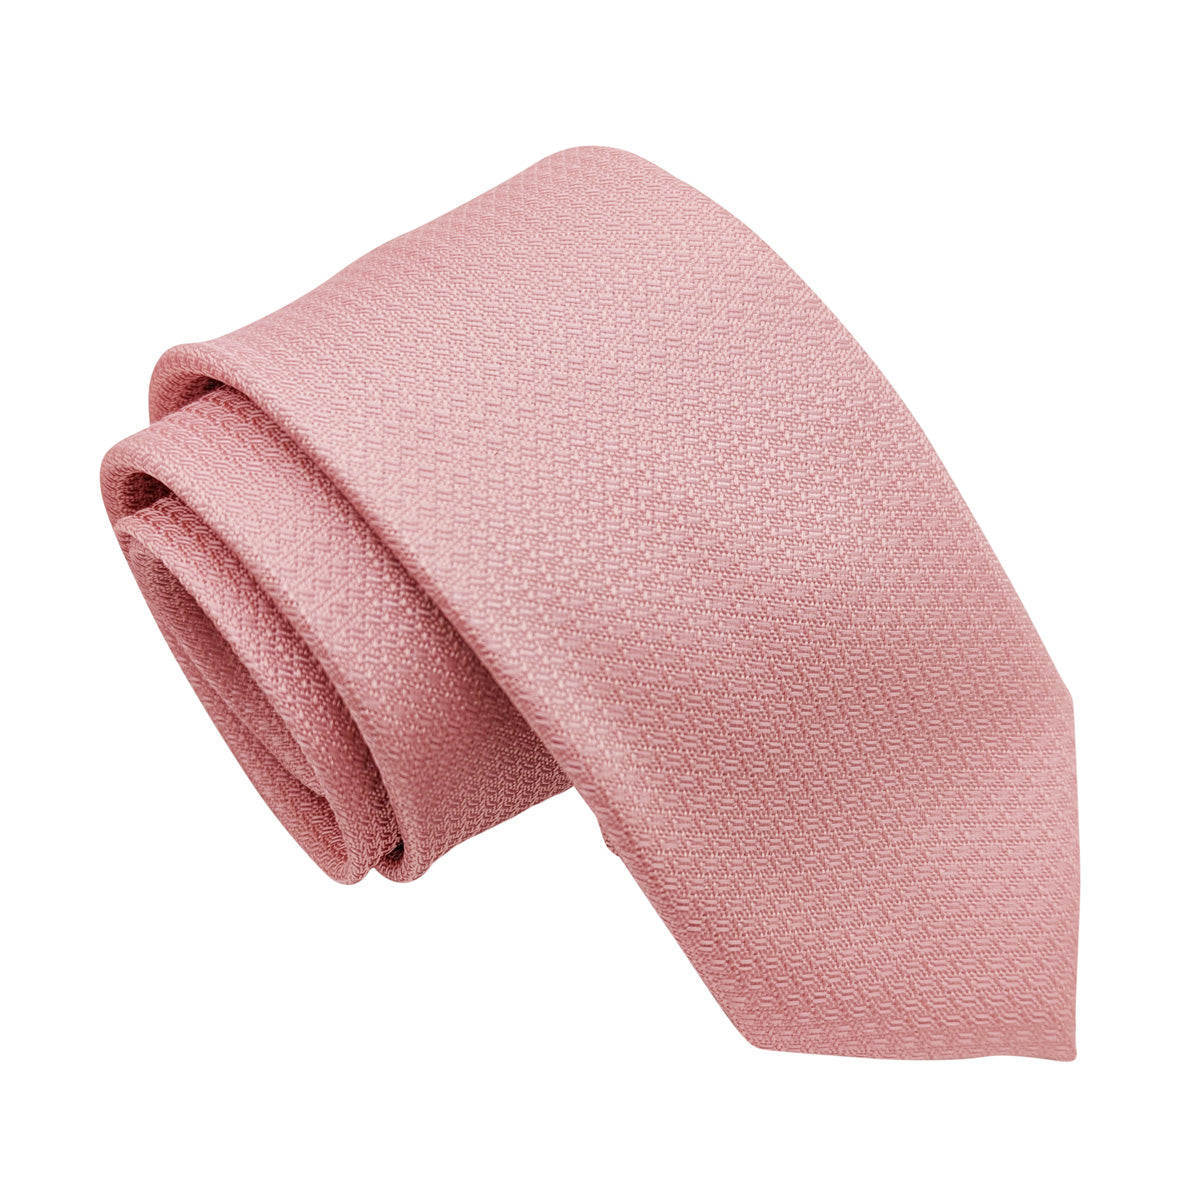 Pink Sky Woven Wedding Tie